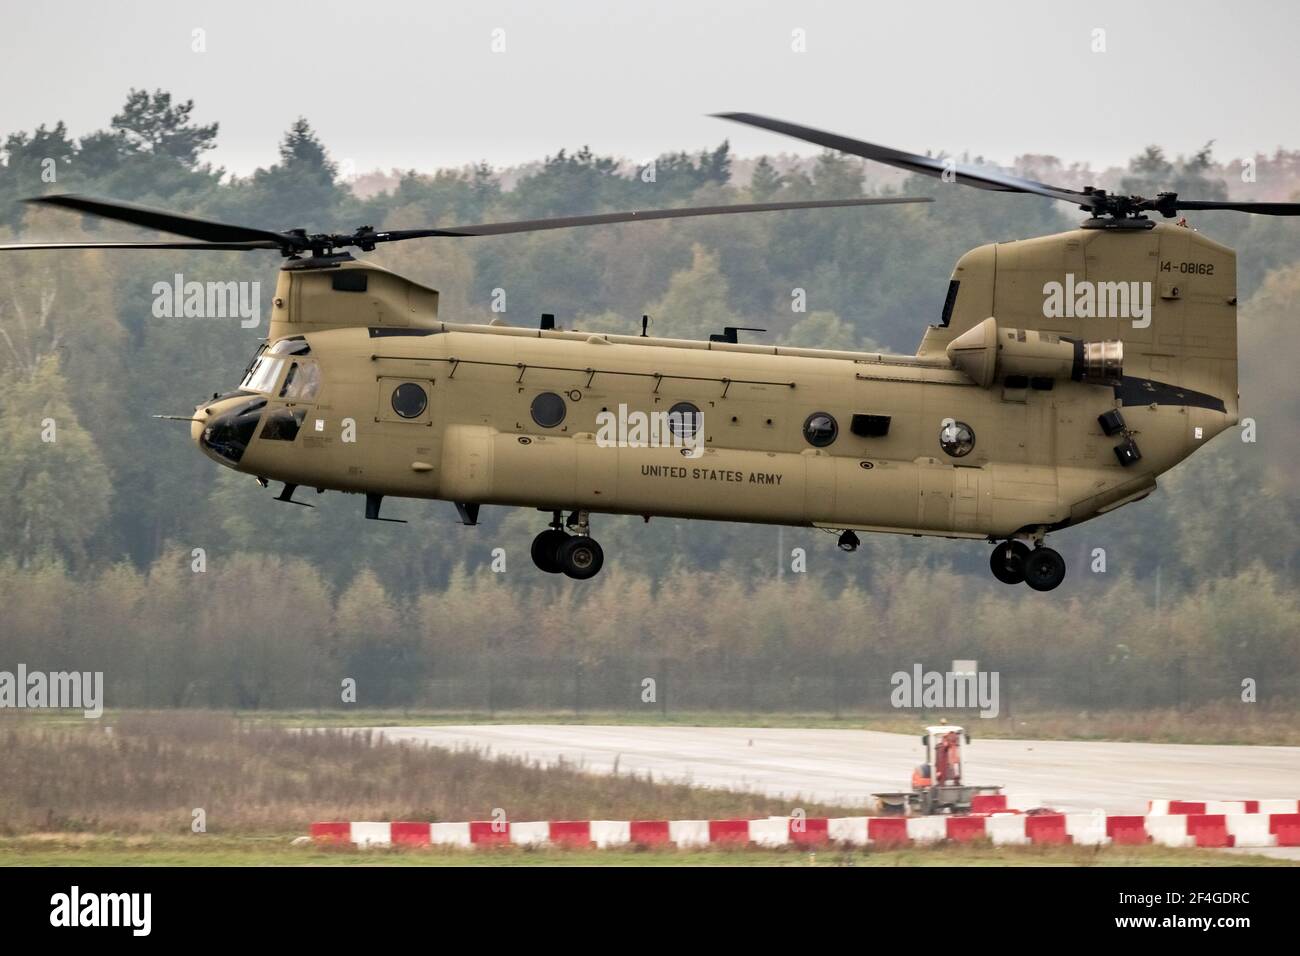 HÉLICOPTÈRE de transport DE l'ARMÉE AMÉRICAINE Boeing CH-47F Chinook atterrissant à un aéroport aux pays-Bas - le 2 juillet 2020 Banque D'Images